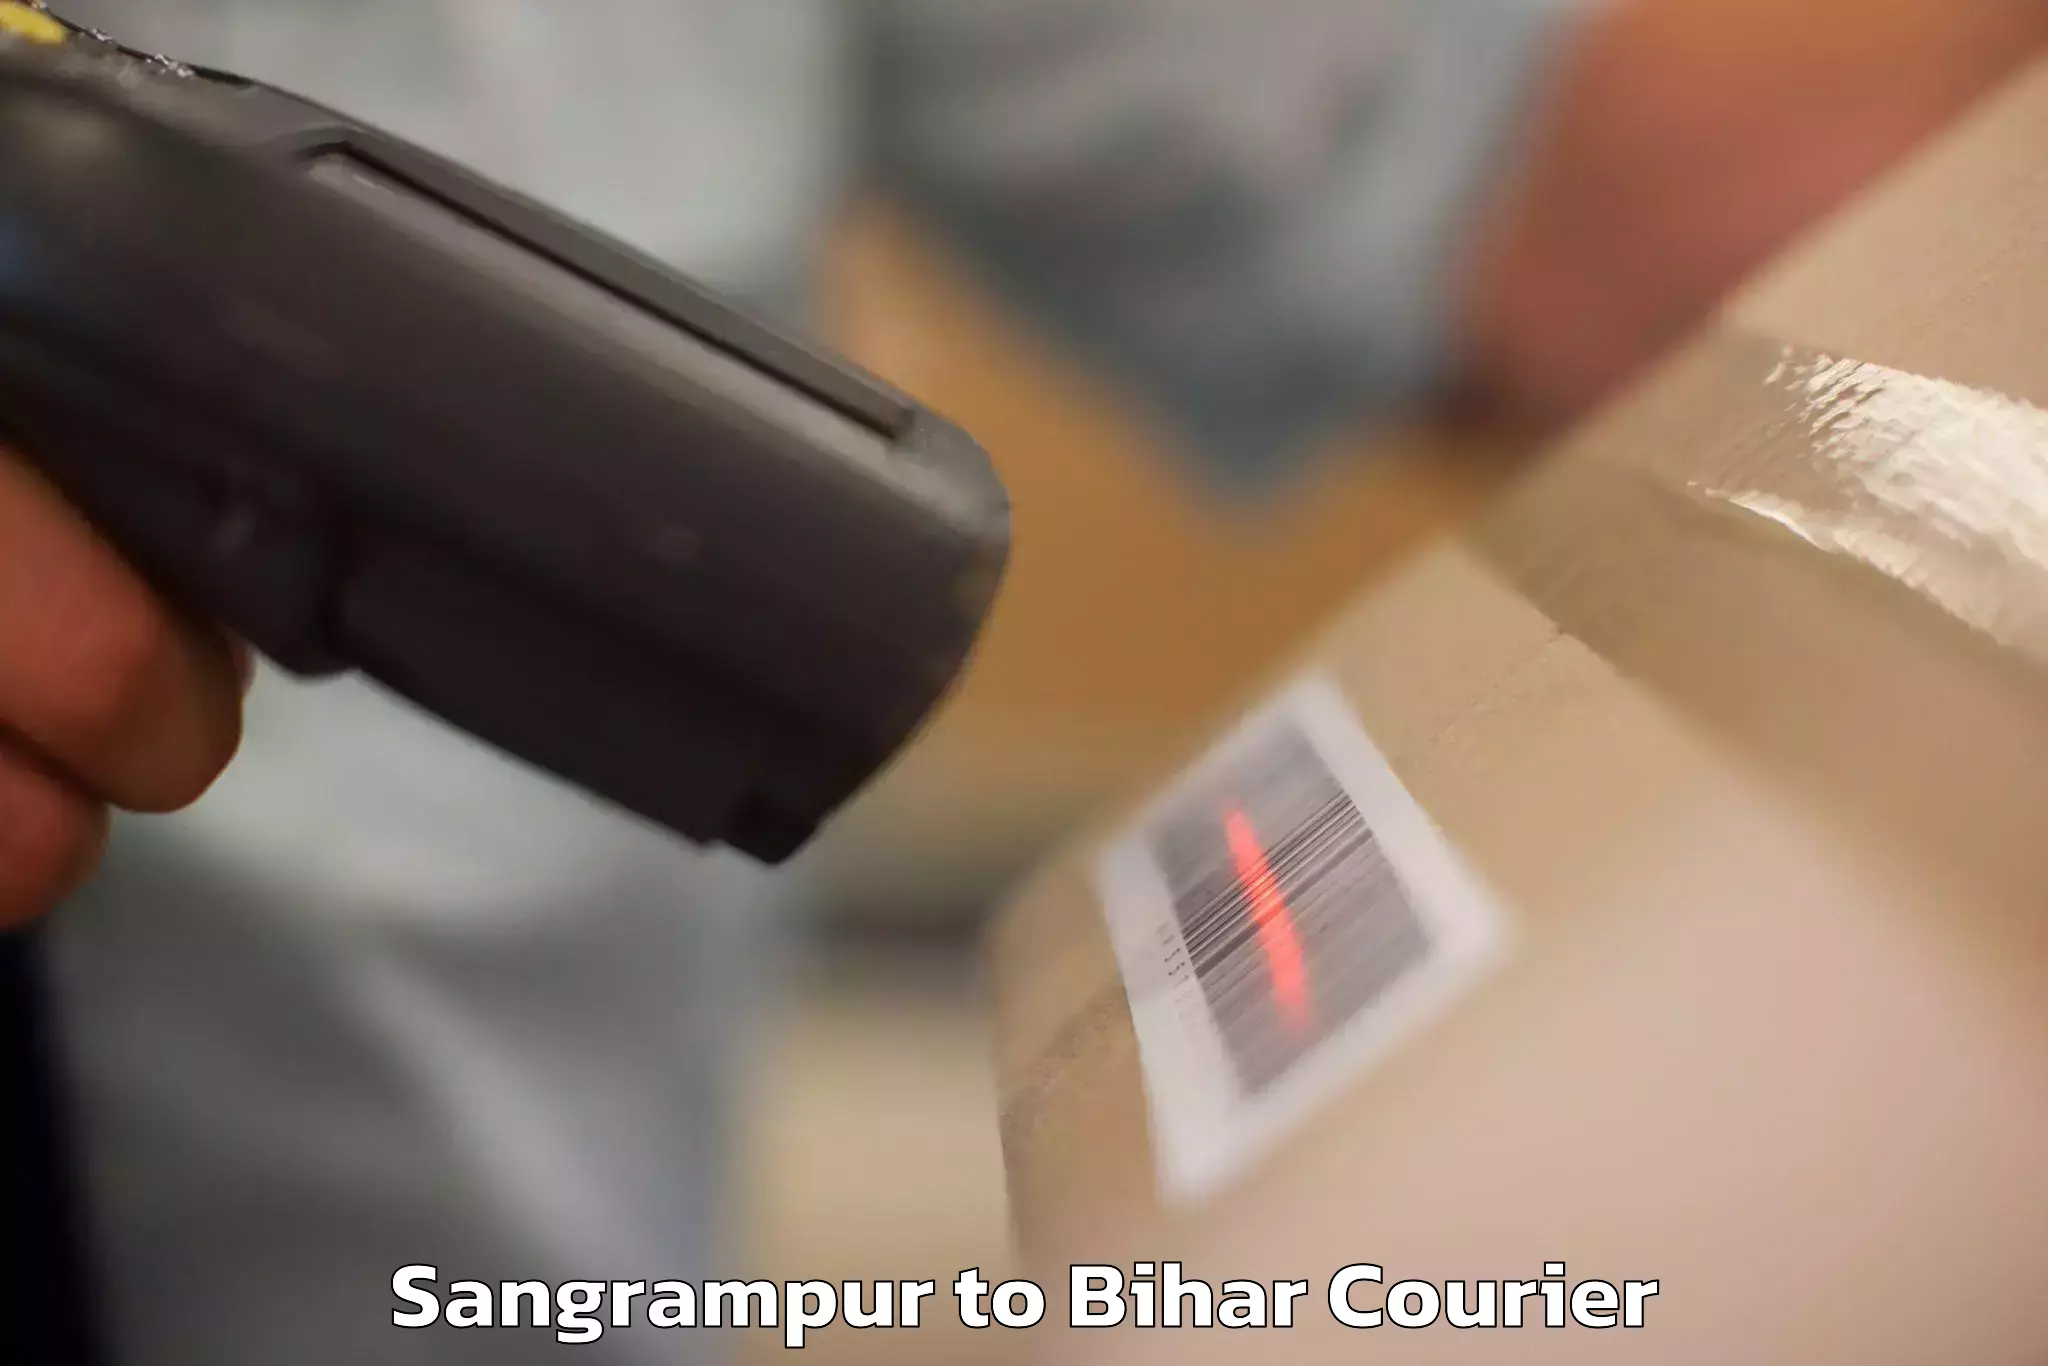 Luggage shipping service Sangrampur to Pavapuri